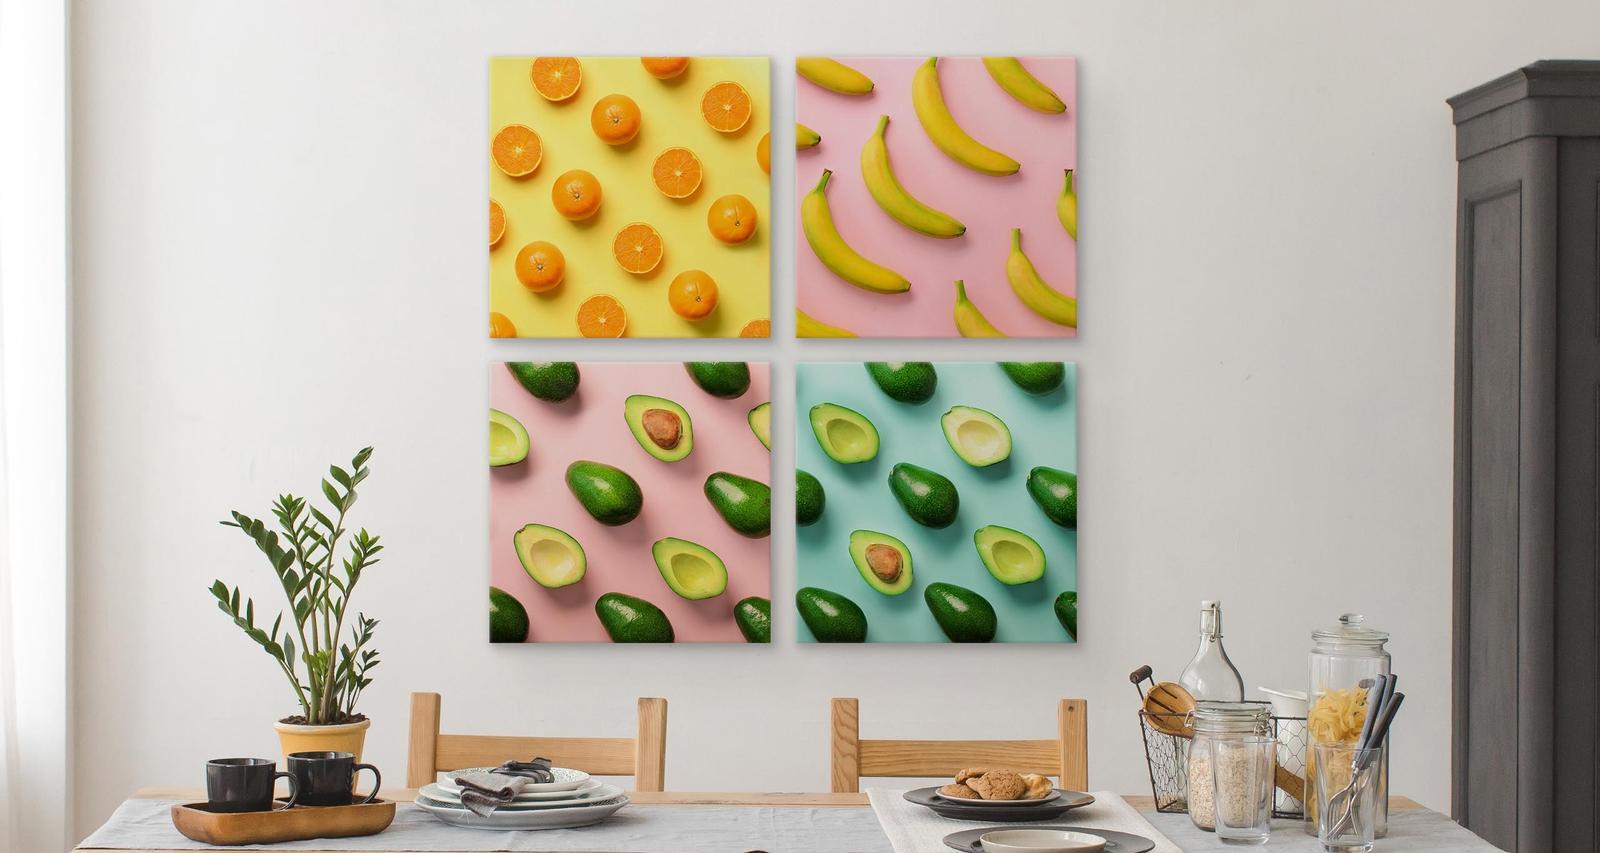 Obrazy SET Do Kuchni OWOCE Cytrusy Awokado Pop-Art Jedzenie 80x80cm nr. 6